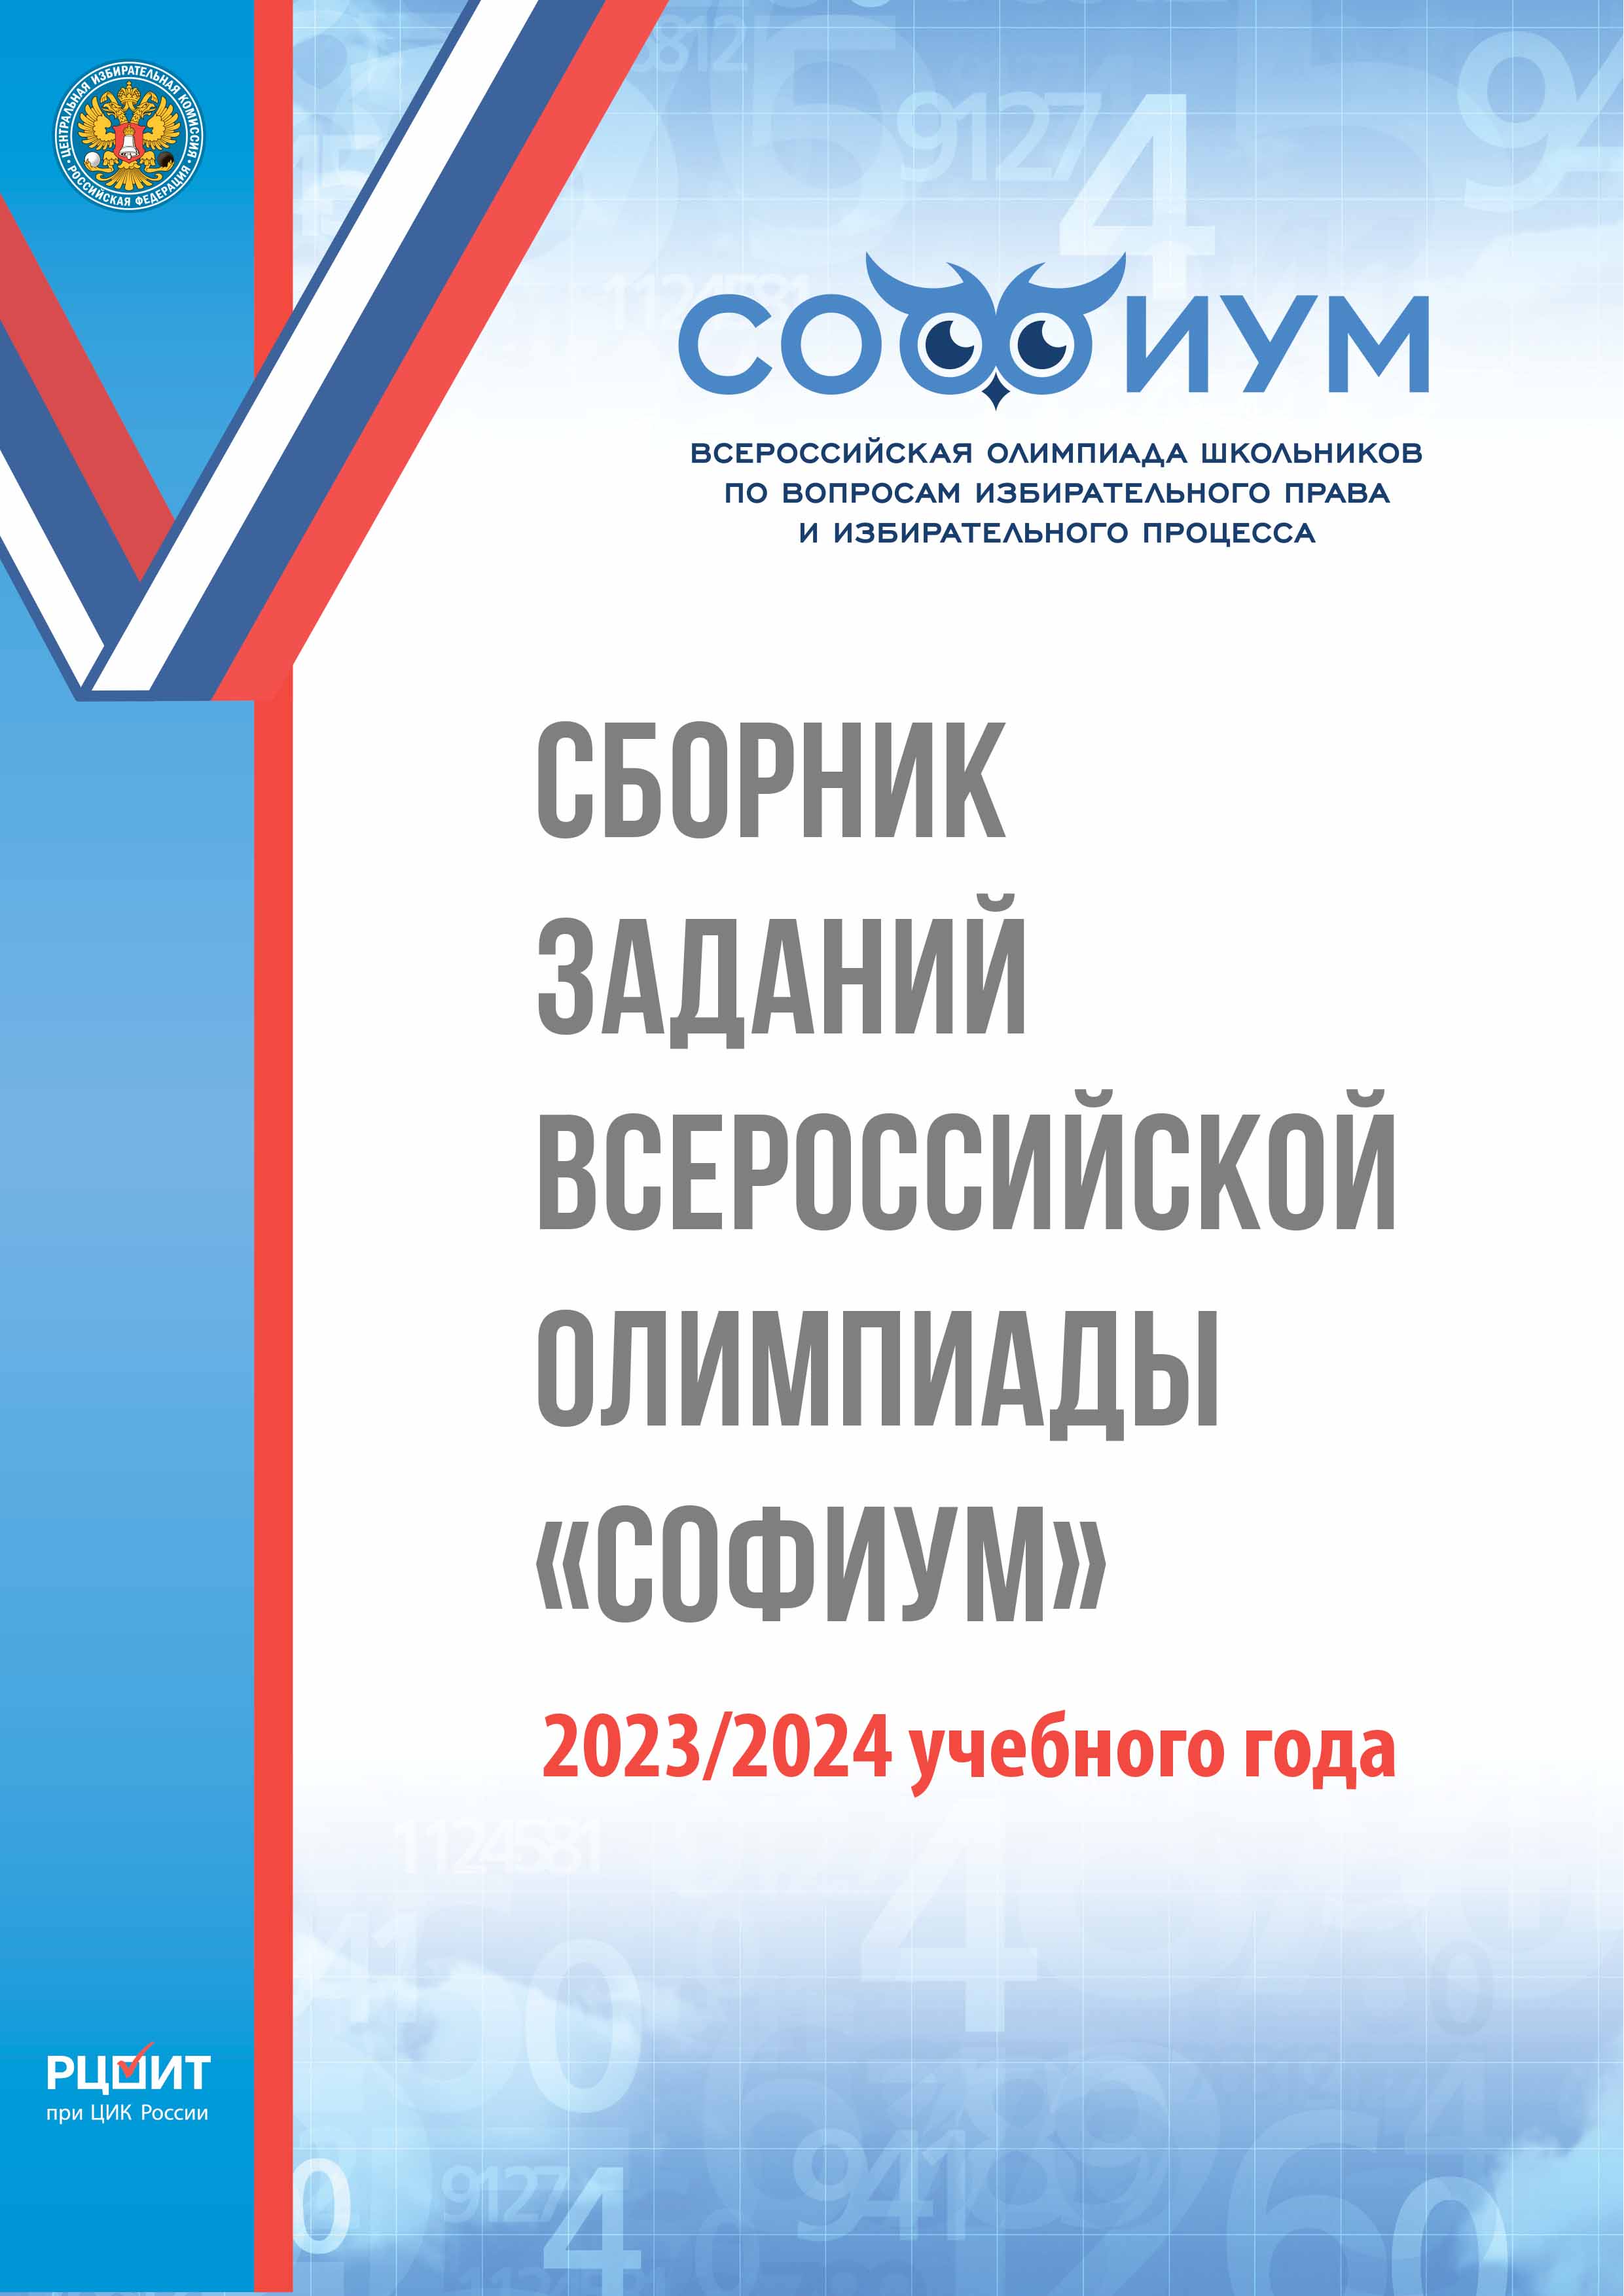 Сборник заданий Всероссийской олимпиады «Софиум» 2023/2024 учебного года